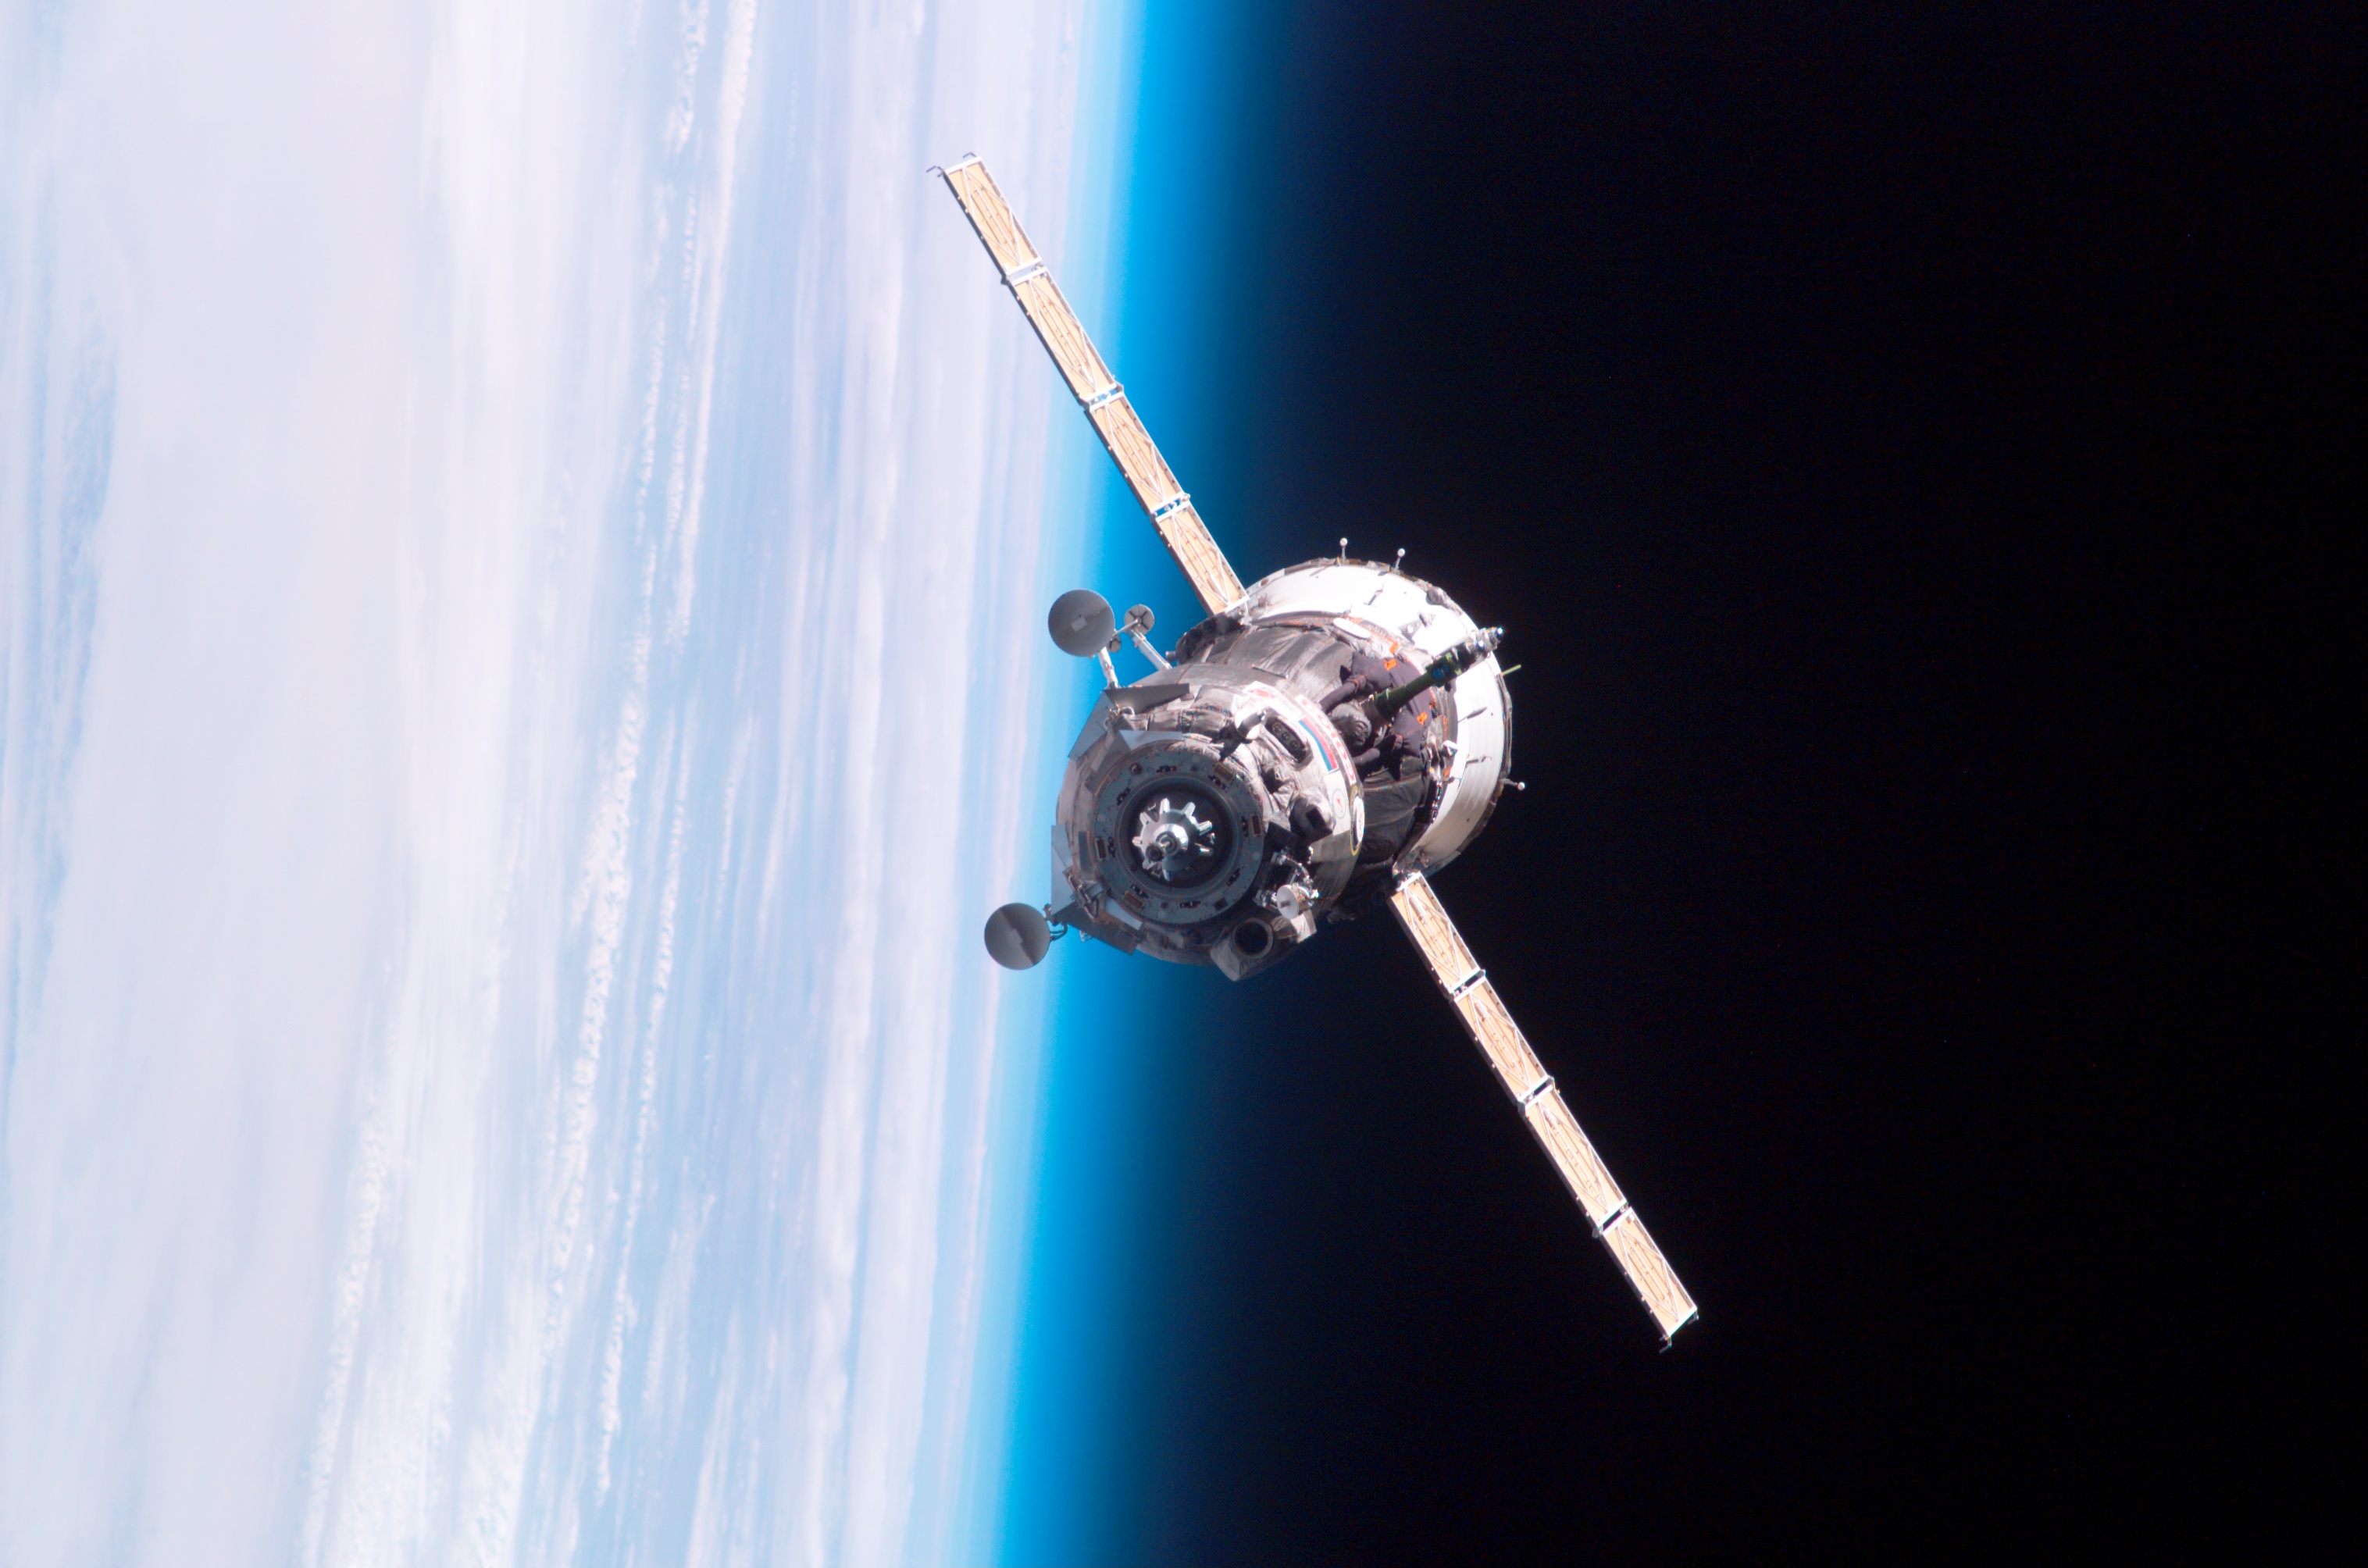 Фото космического корабля в космосе. Спутники Спейс Икс. Военный Спутник «космос-2555. Союз ТМА-6. Космические аппараты.